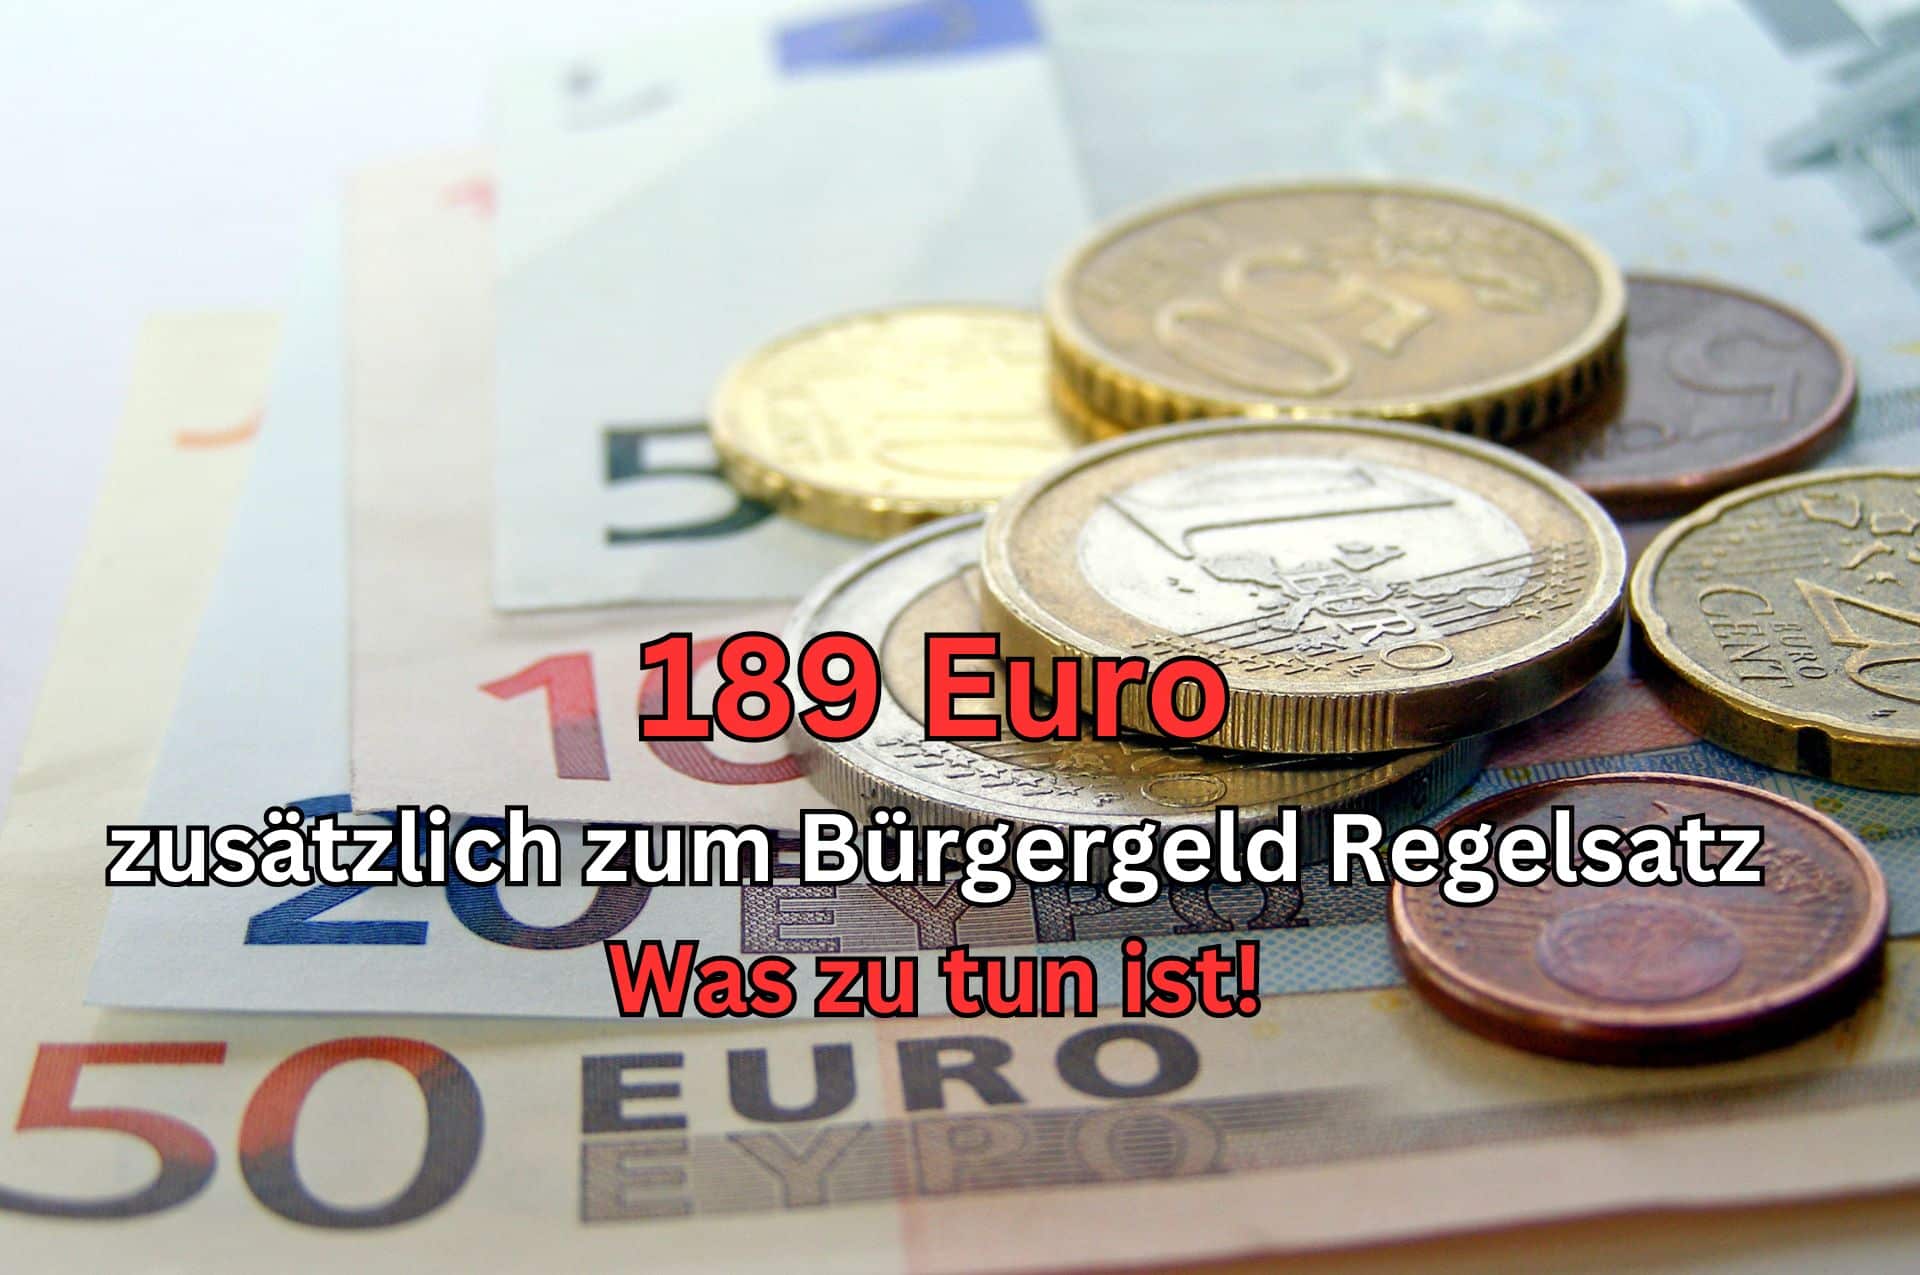 Wie man als Bürgergeld Bezieher 189 Euro zusätzlich zum Regelsatz erhalten kann!